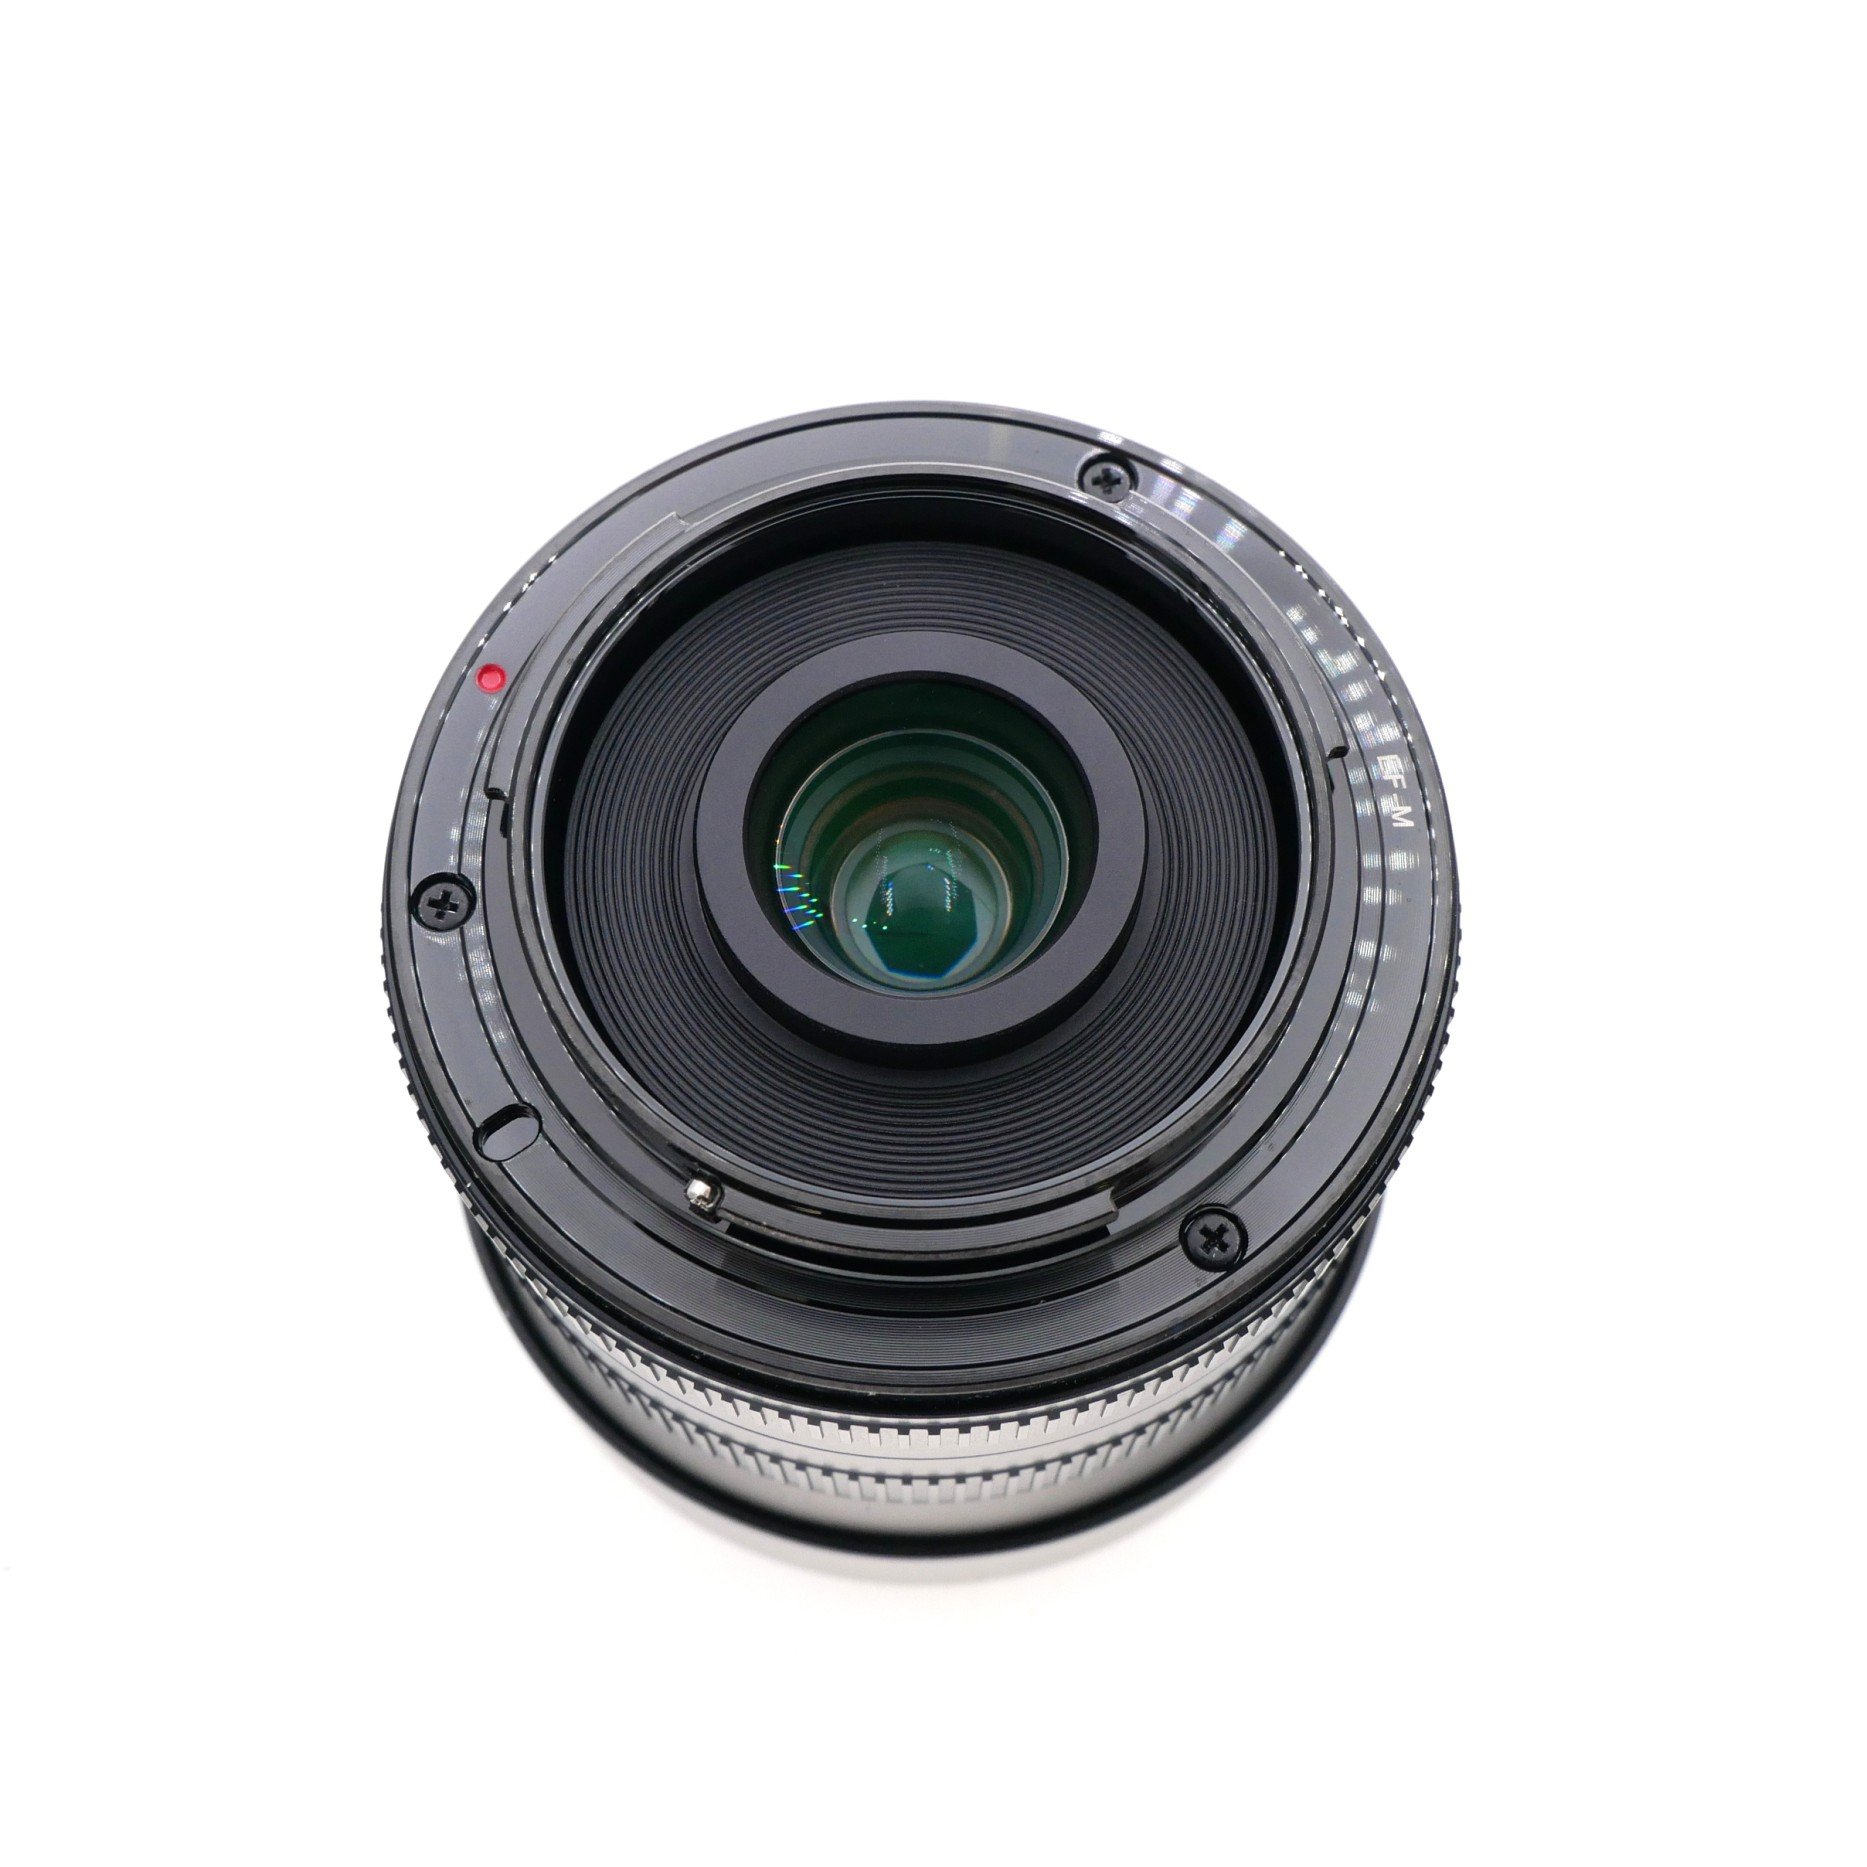 S-H-TCJ5PF_3.jpg - 7Artisans 7.5mm F2.8 II Fish-Eye Lens for Canon EF-M Mount 